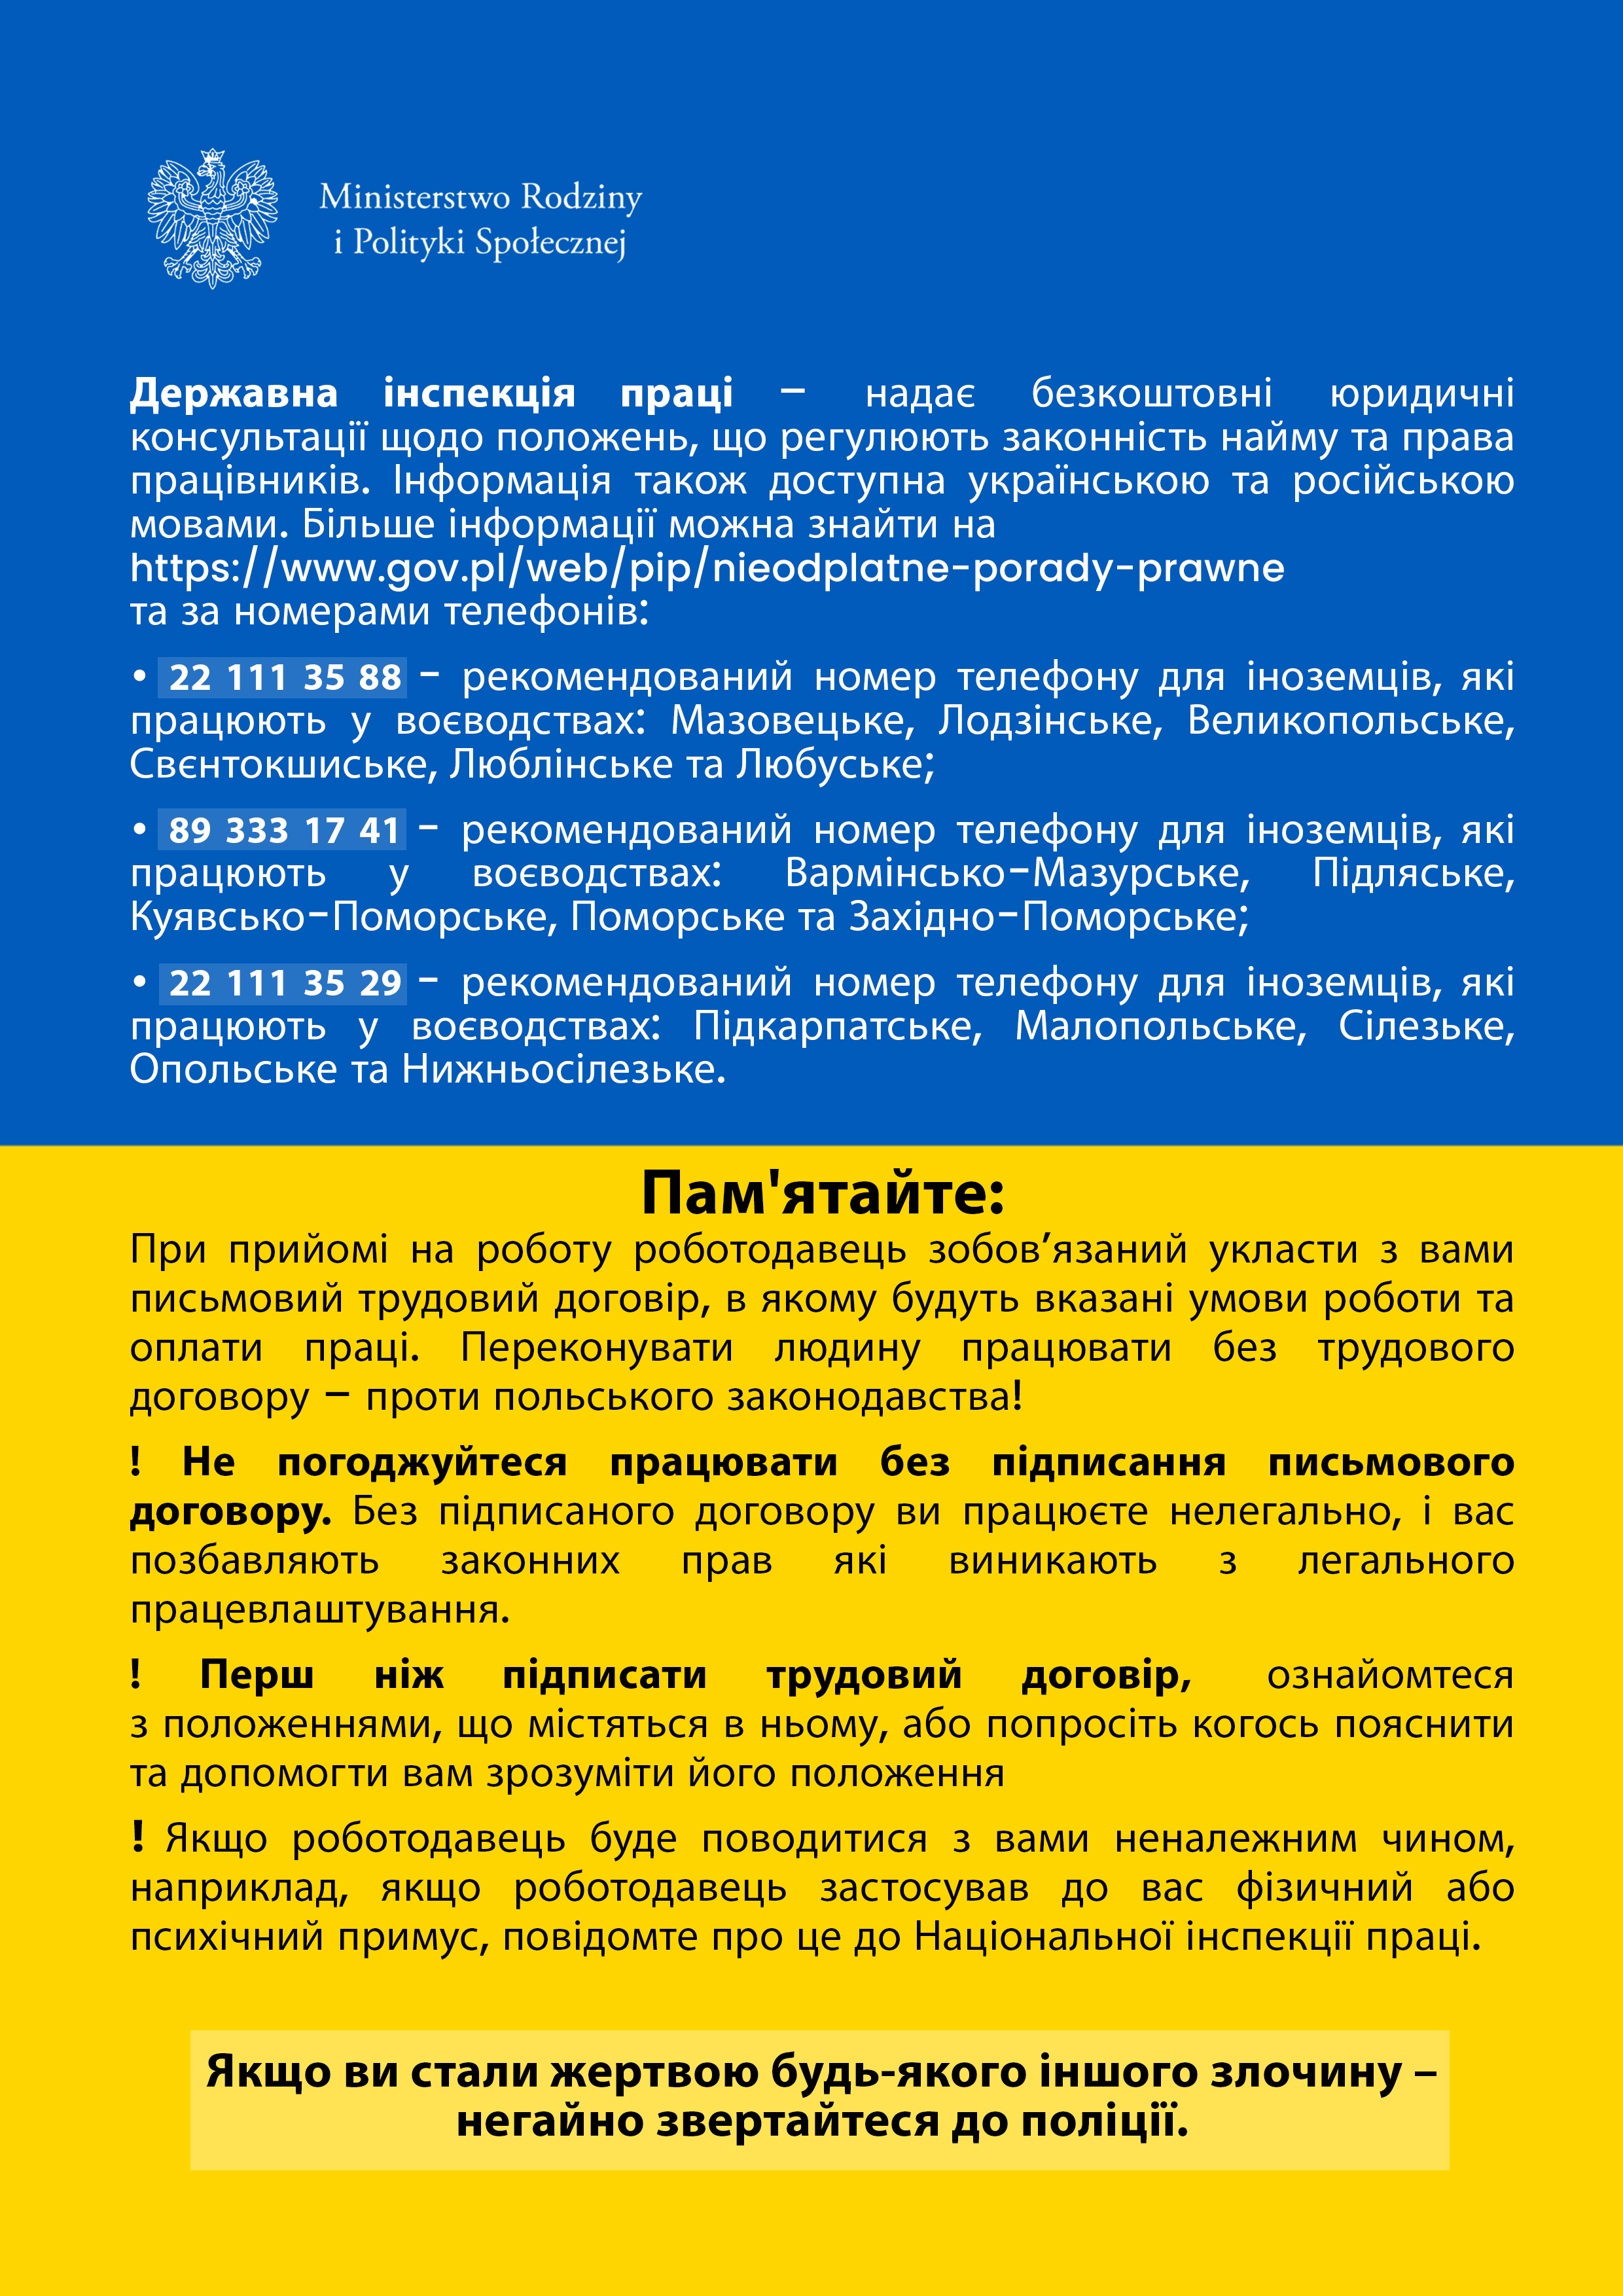 rady w języku ukraińskim dla obywateli Ukrainy zainteresowanych podjeciem pracy